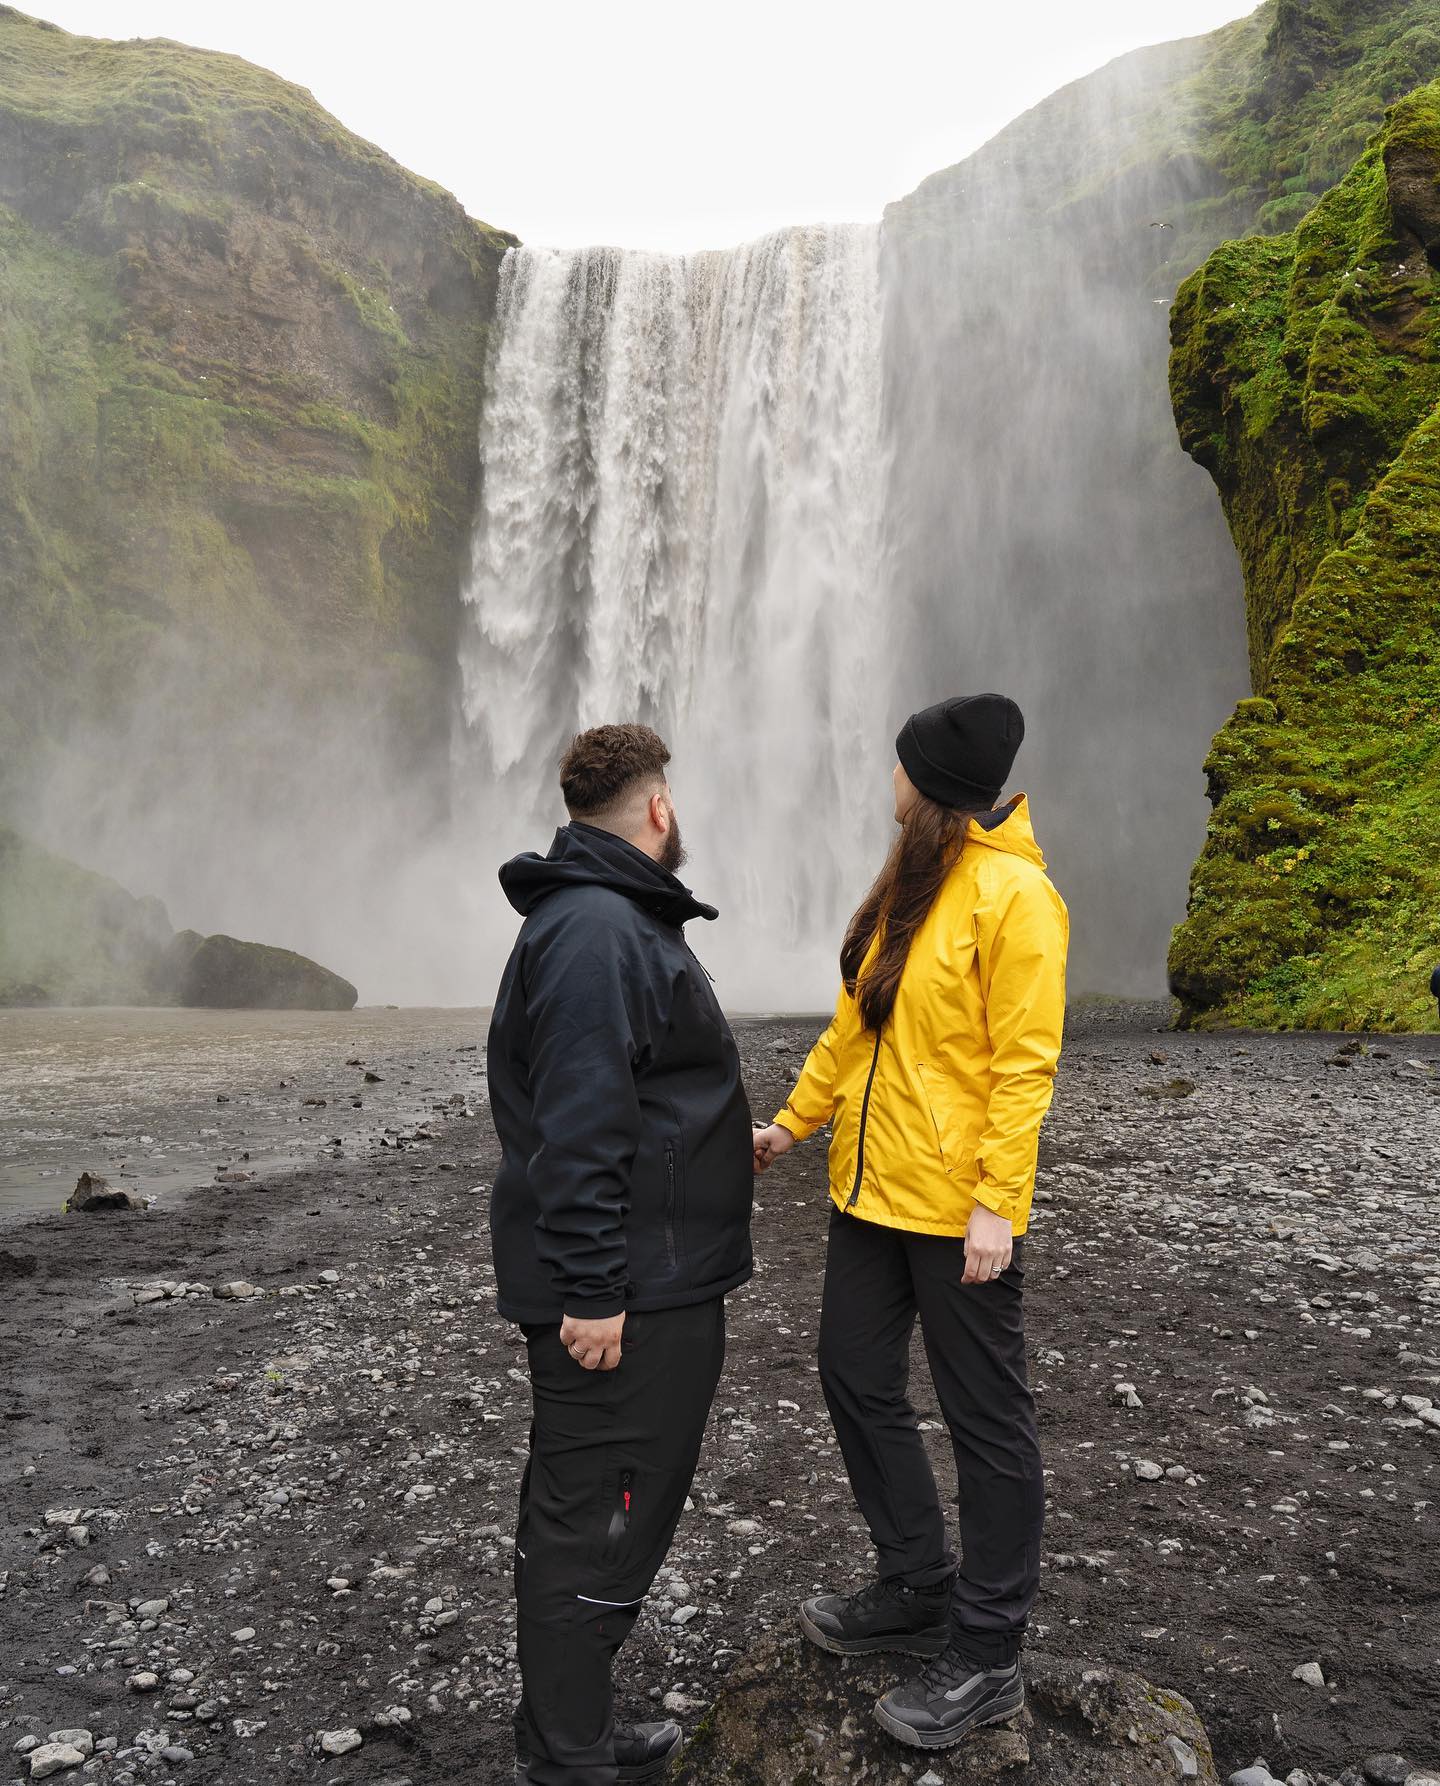 .
⚡️¡Feliz 2022 a todos!⚡️
.
Ya hemos aprendido a vivir más al día, a que todo cambia de un momento a otro y a adaptarnos a nuevas circunstancias.
.
No sabemos qué nos deparará el año nuevo. Y ya no le pedimos nada, pero si nos quiere llevar a cualquier lugar del mundo… no le vamos a decir que no😜
.
#islandia #iceland #globetrotter #viajesglobetrotter #travelblog #travelblogger #wanderlust #wanderer #iamtb #mondofotodelmes #skogafoss